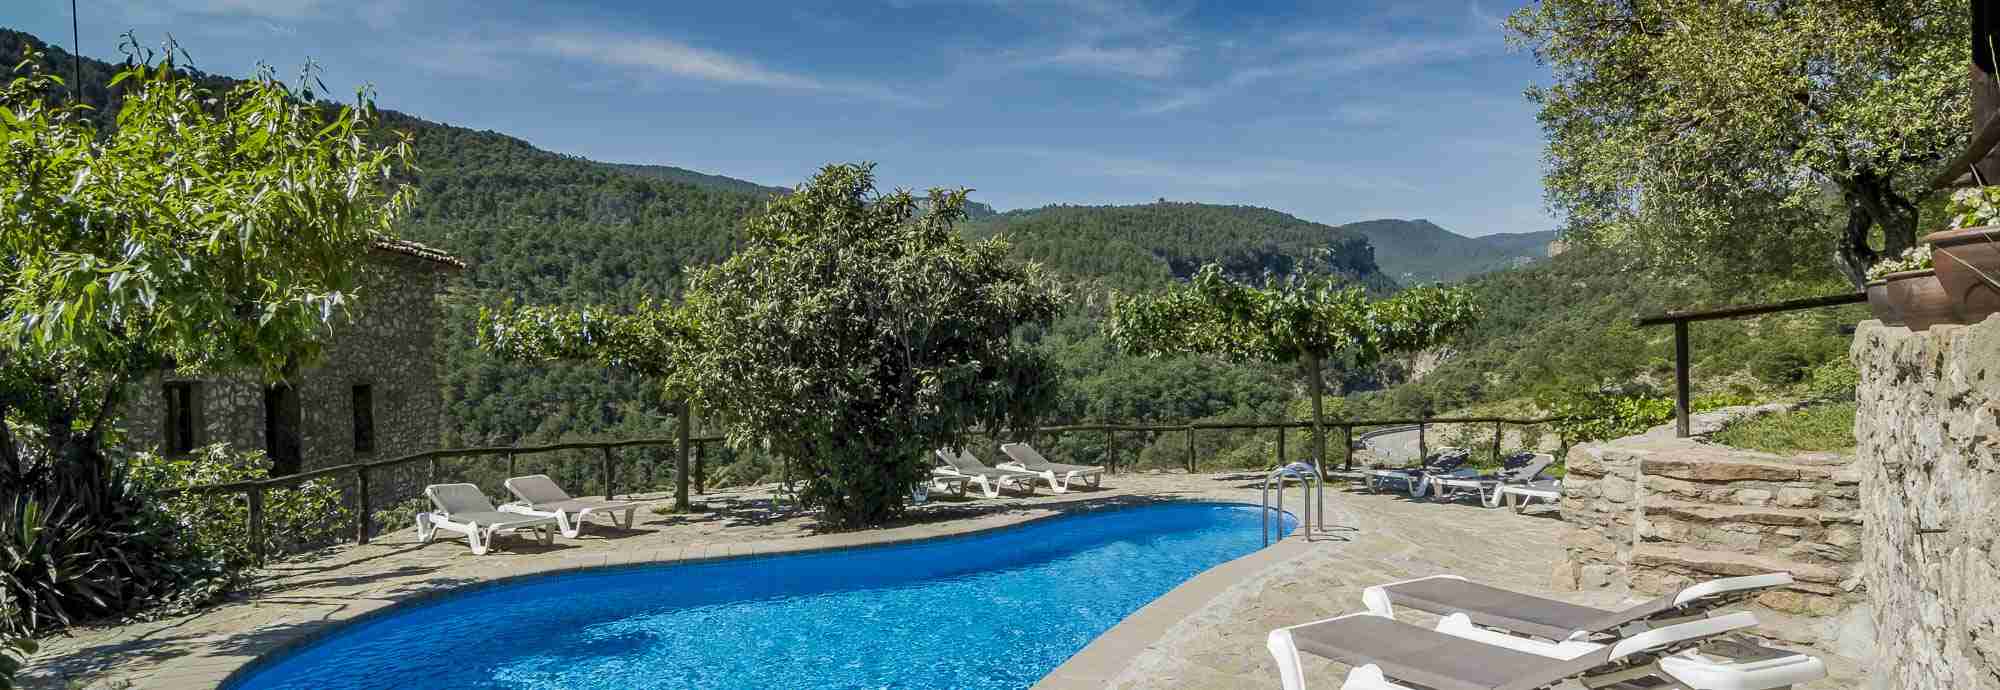 Magnífica masía del siglo X con piscinas cubierta y exterior en Pirineos